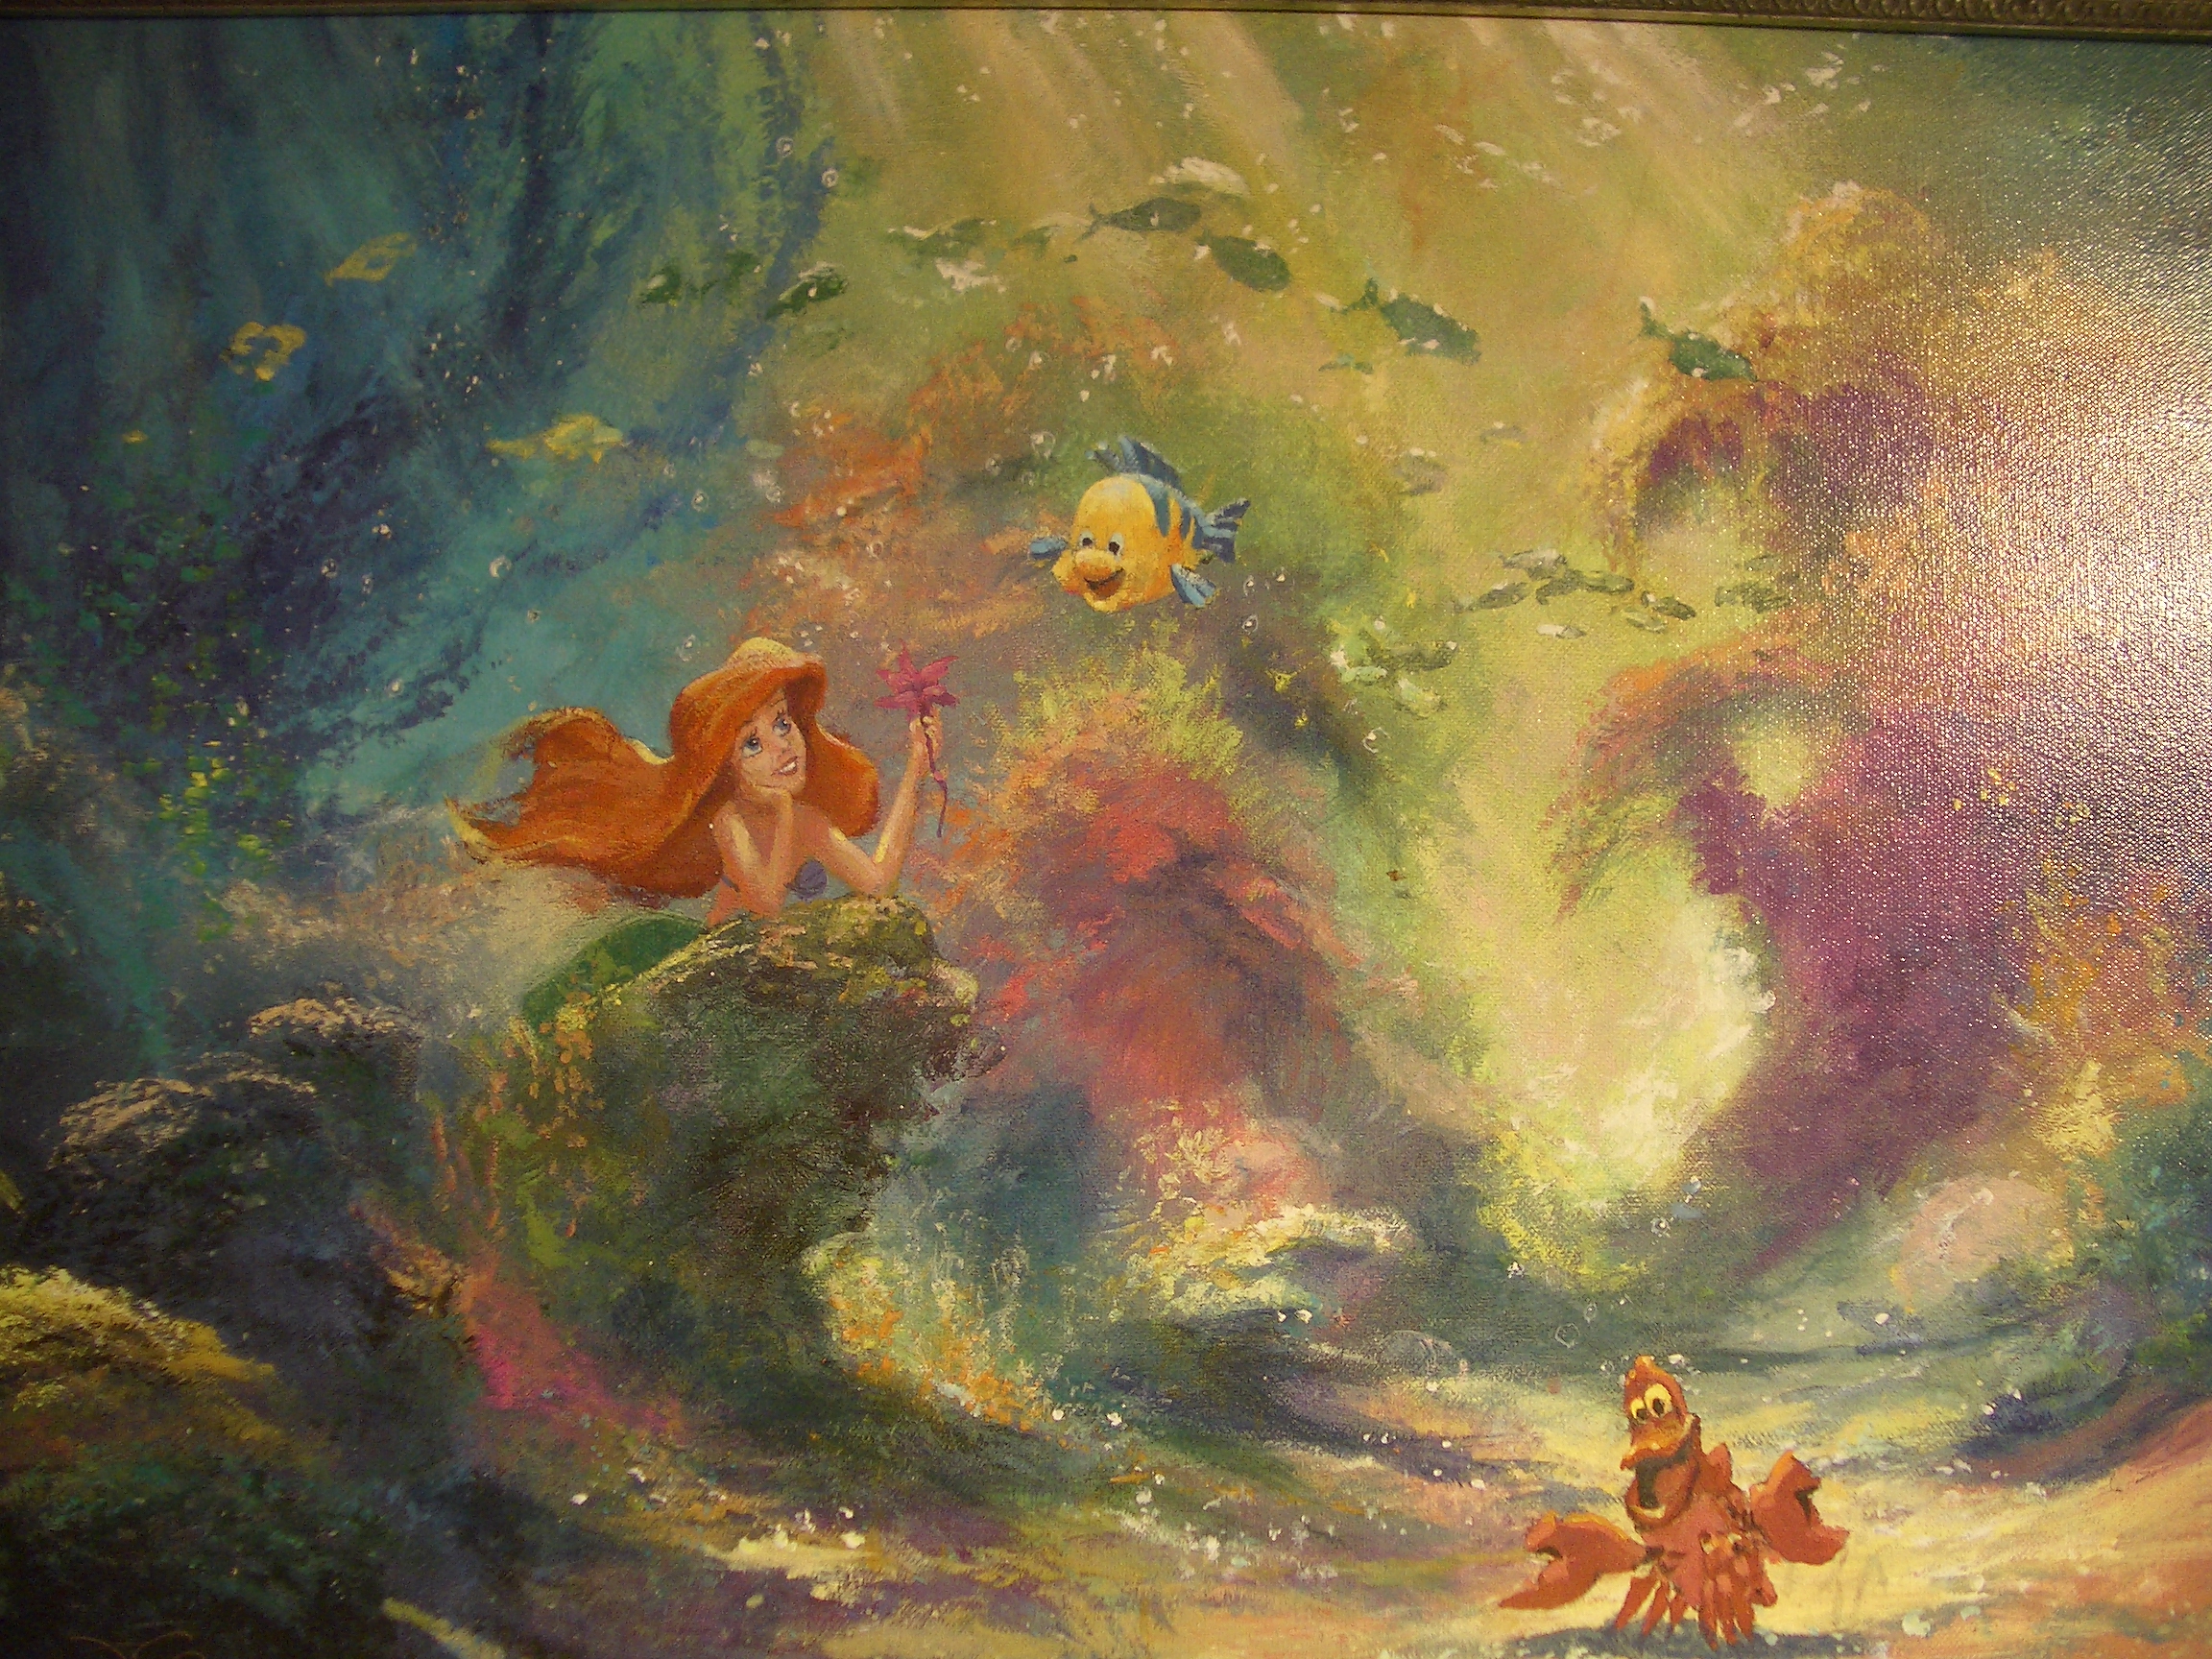 The Little Mermaid, artwork, Ariel (Mermaid) - desktop wallpaper